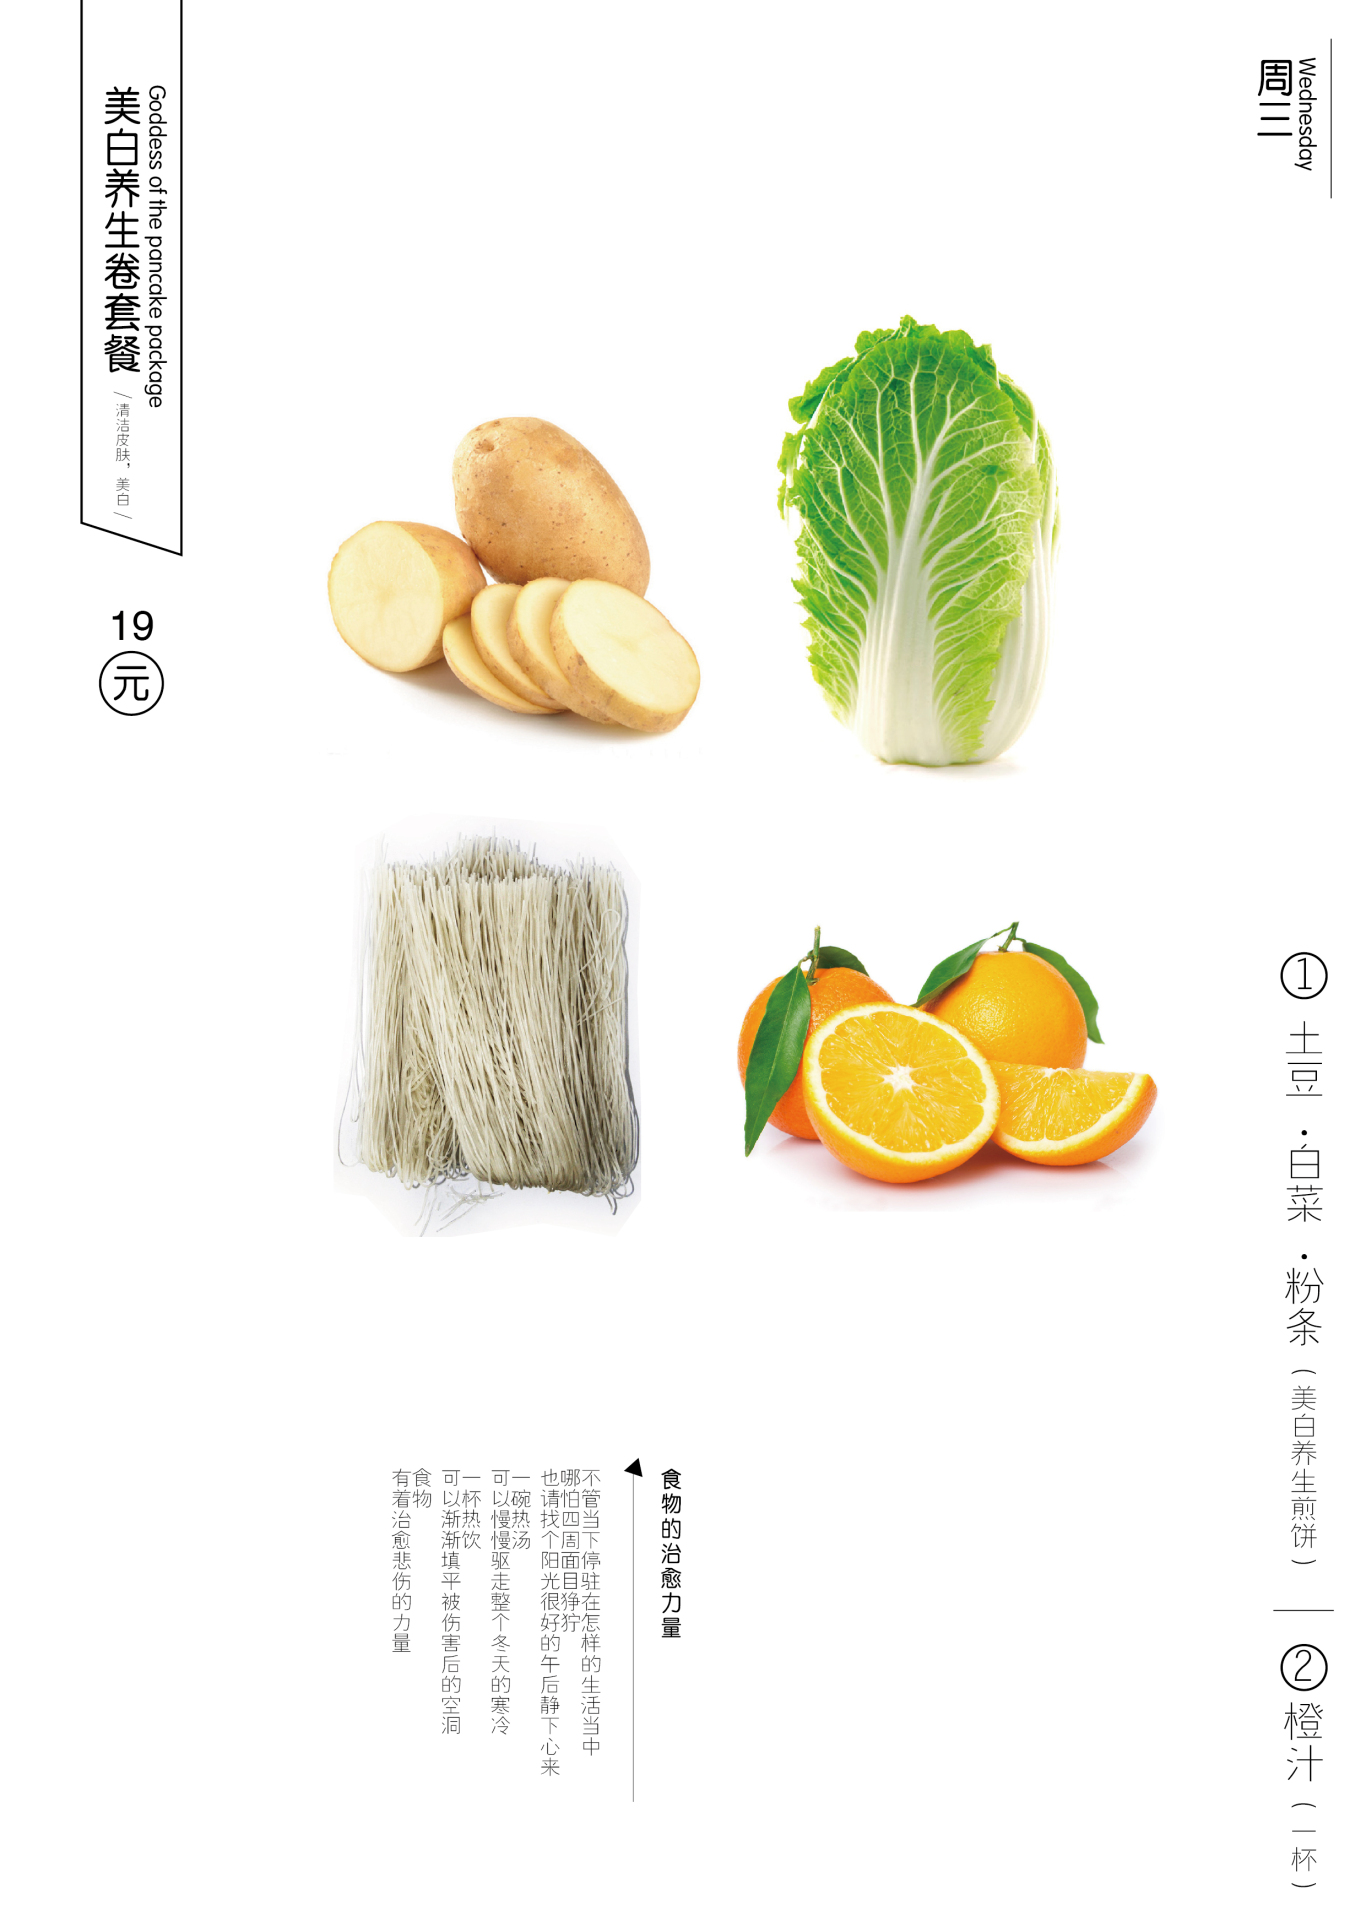 菜菜卷包装菜单设计图12